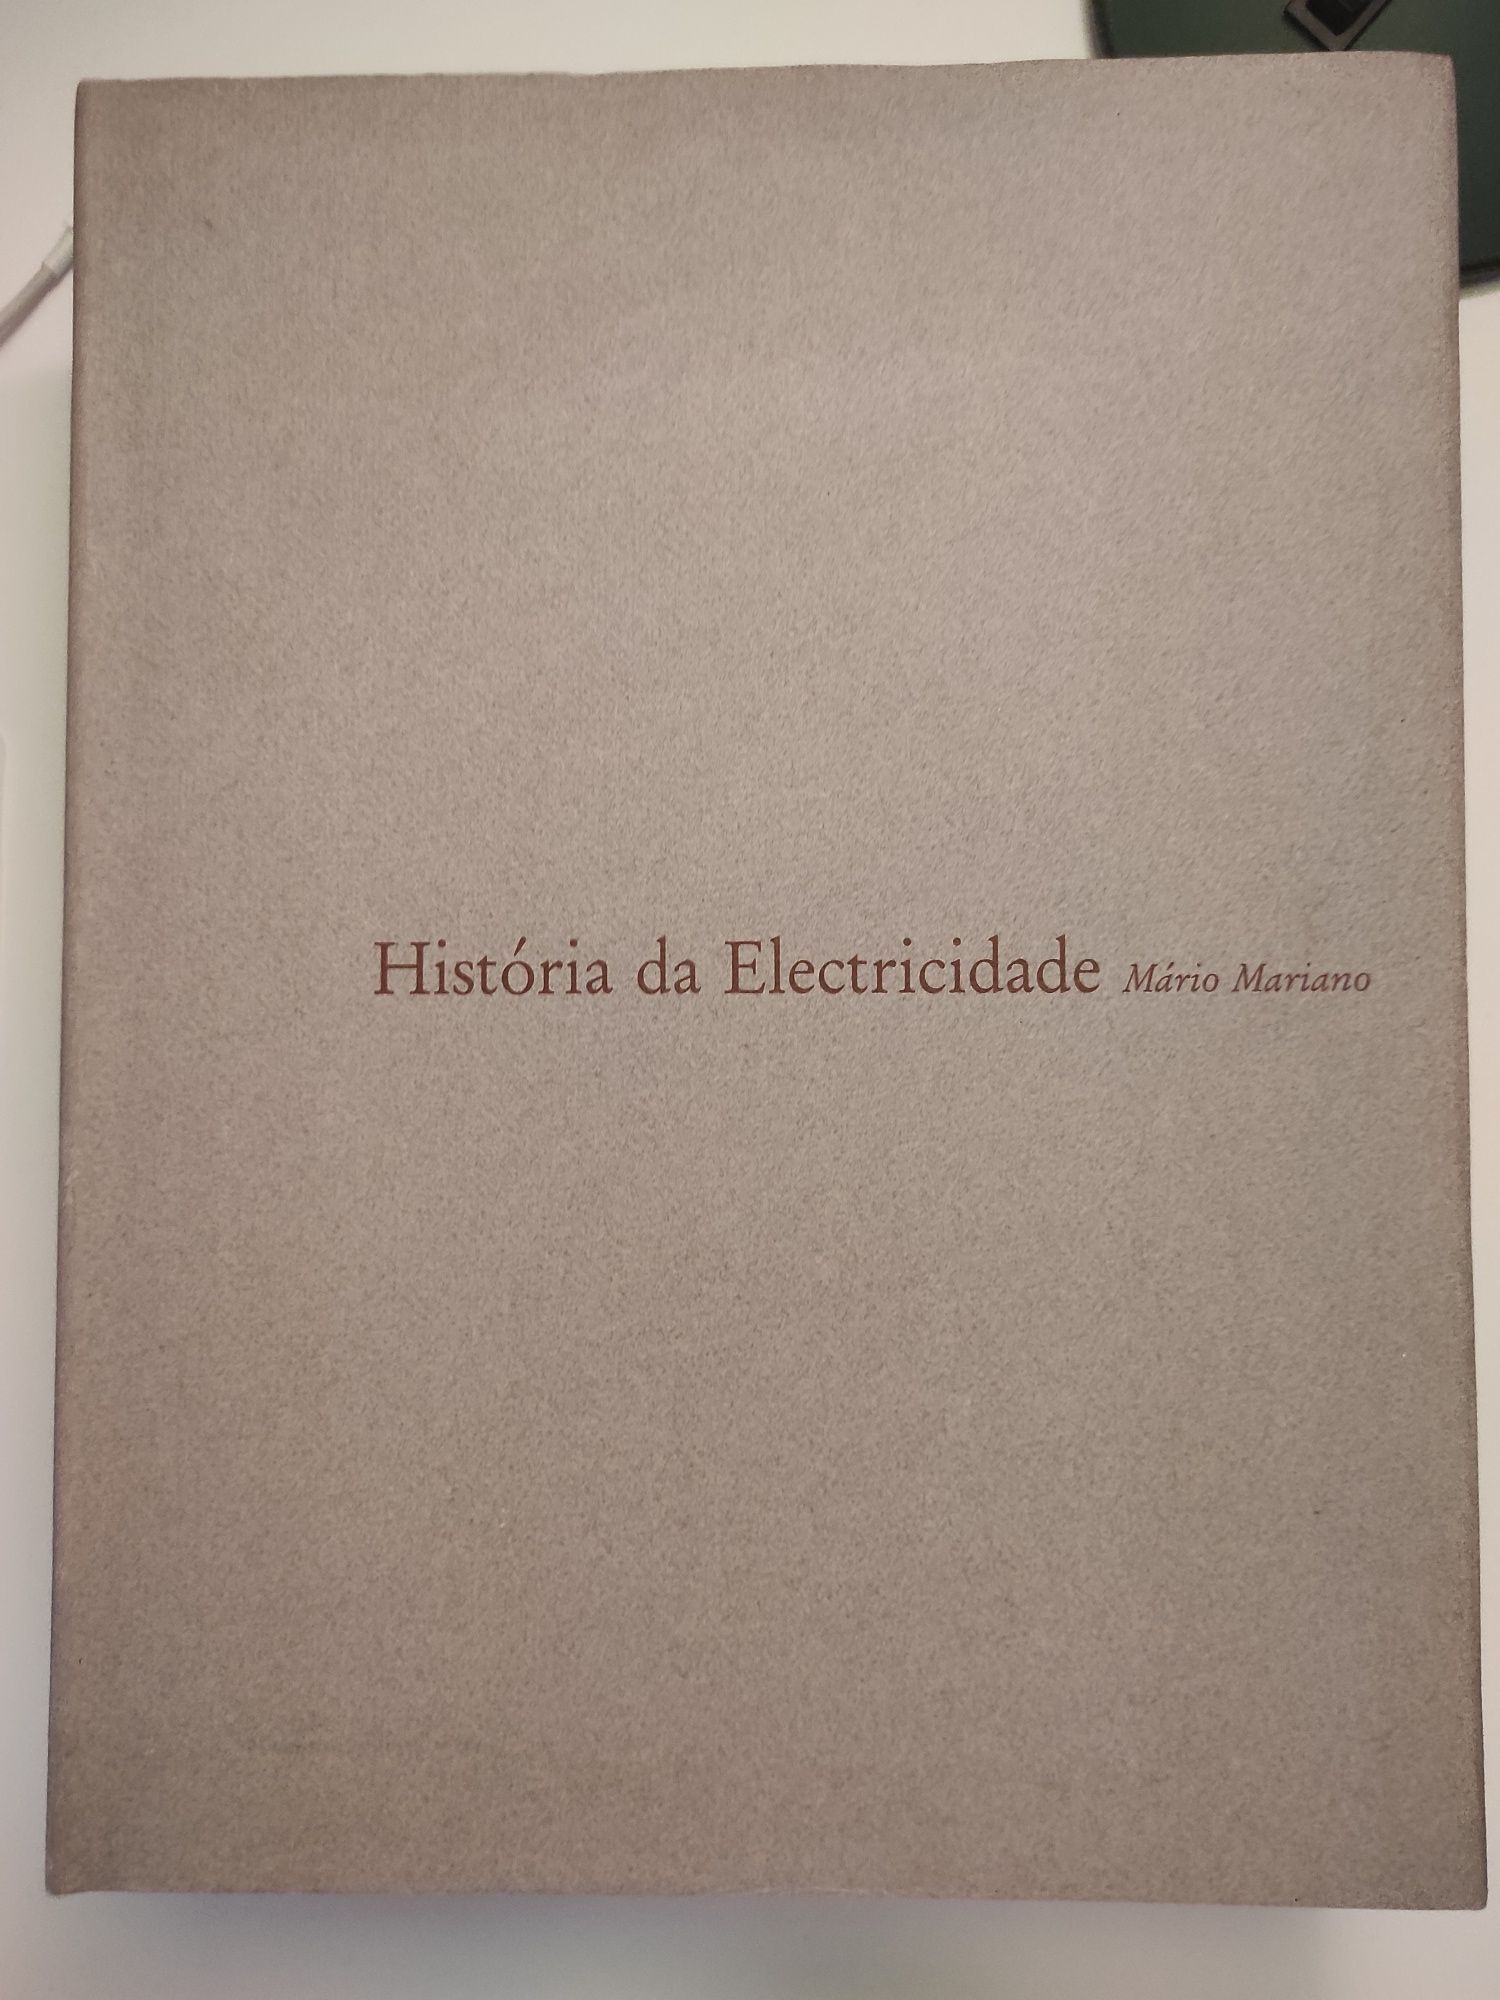 Livro "História da eletricidade" de Mário Mariano